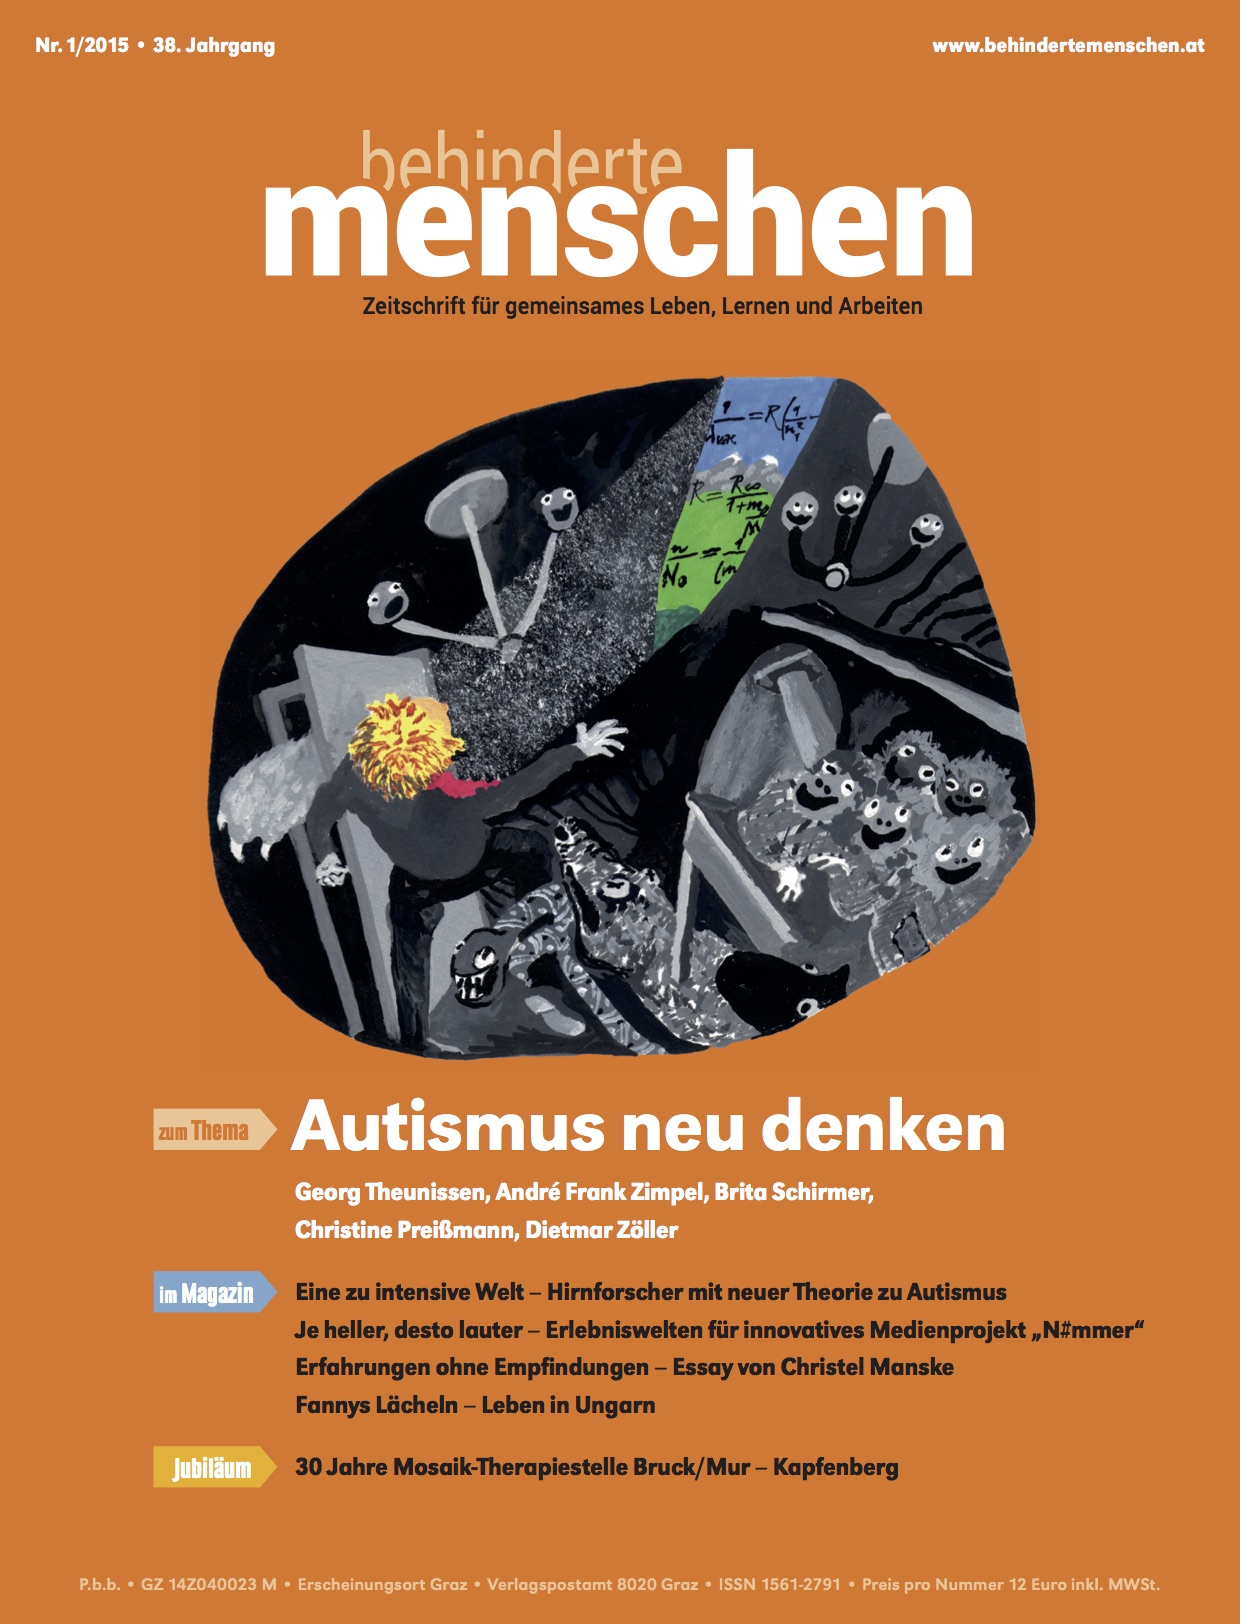 Titelbild der Zeitschrift BEHINDERTE MENSCHEN, Ausgabe 1/2015 "Autismus neu denken"